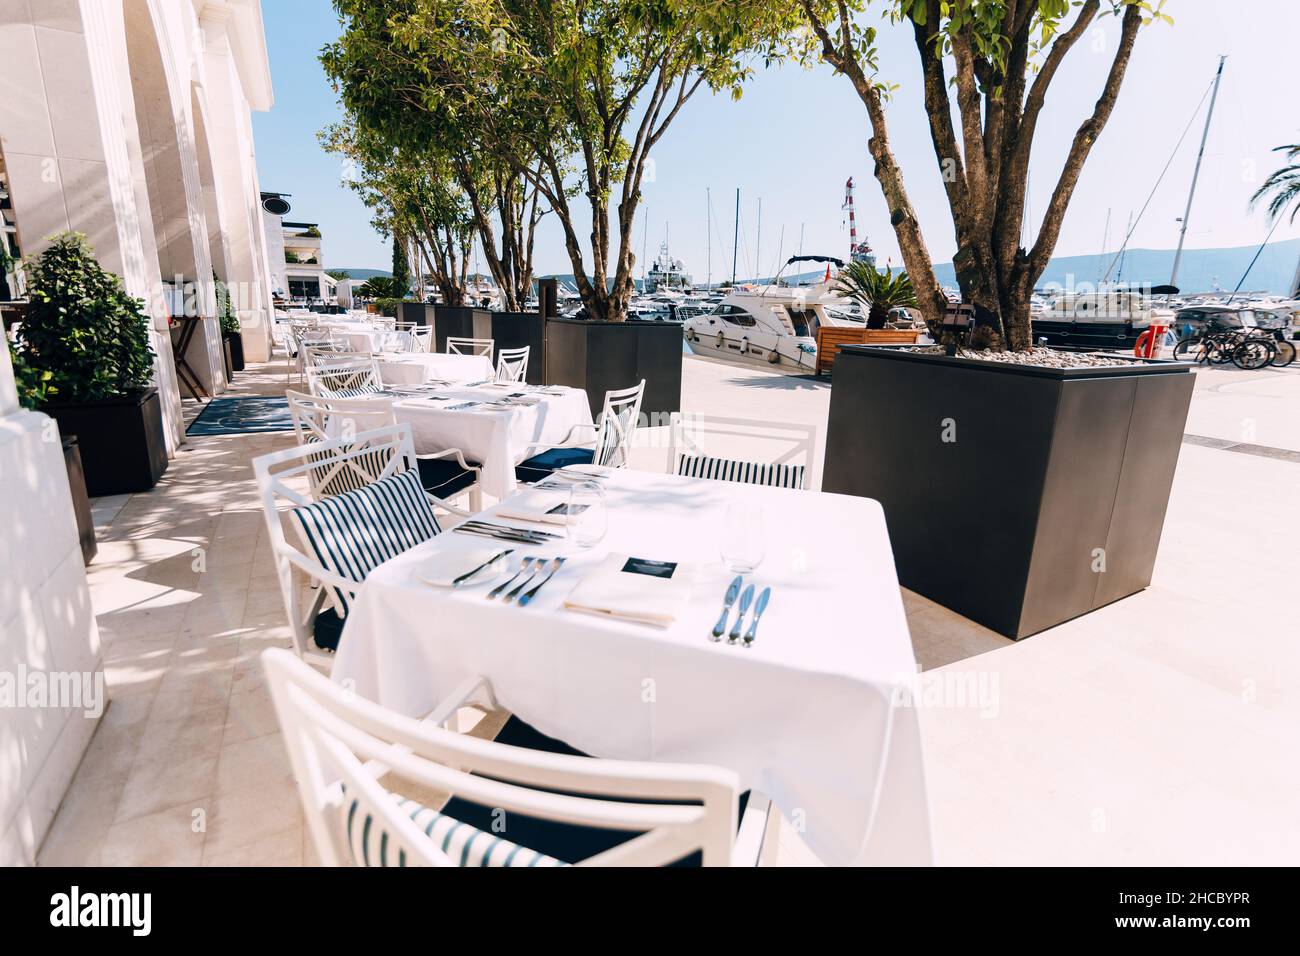 Tische mit weißen Tischdecken und Stühle am Meer neben dem Yachthafen mit festgedeckten Yachten Stockfoto